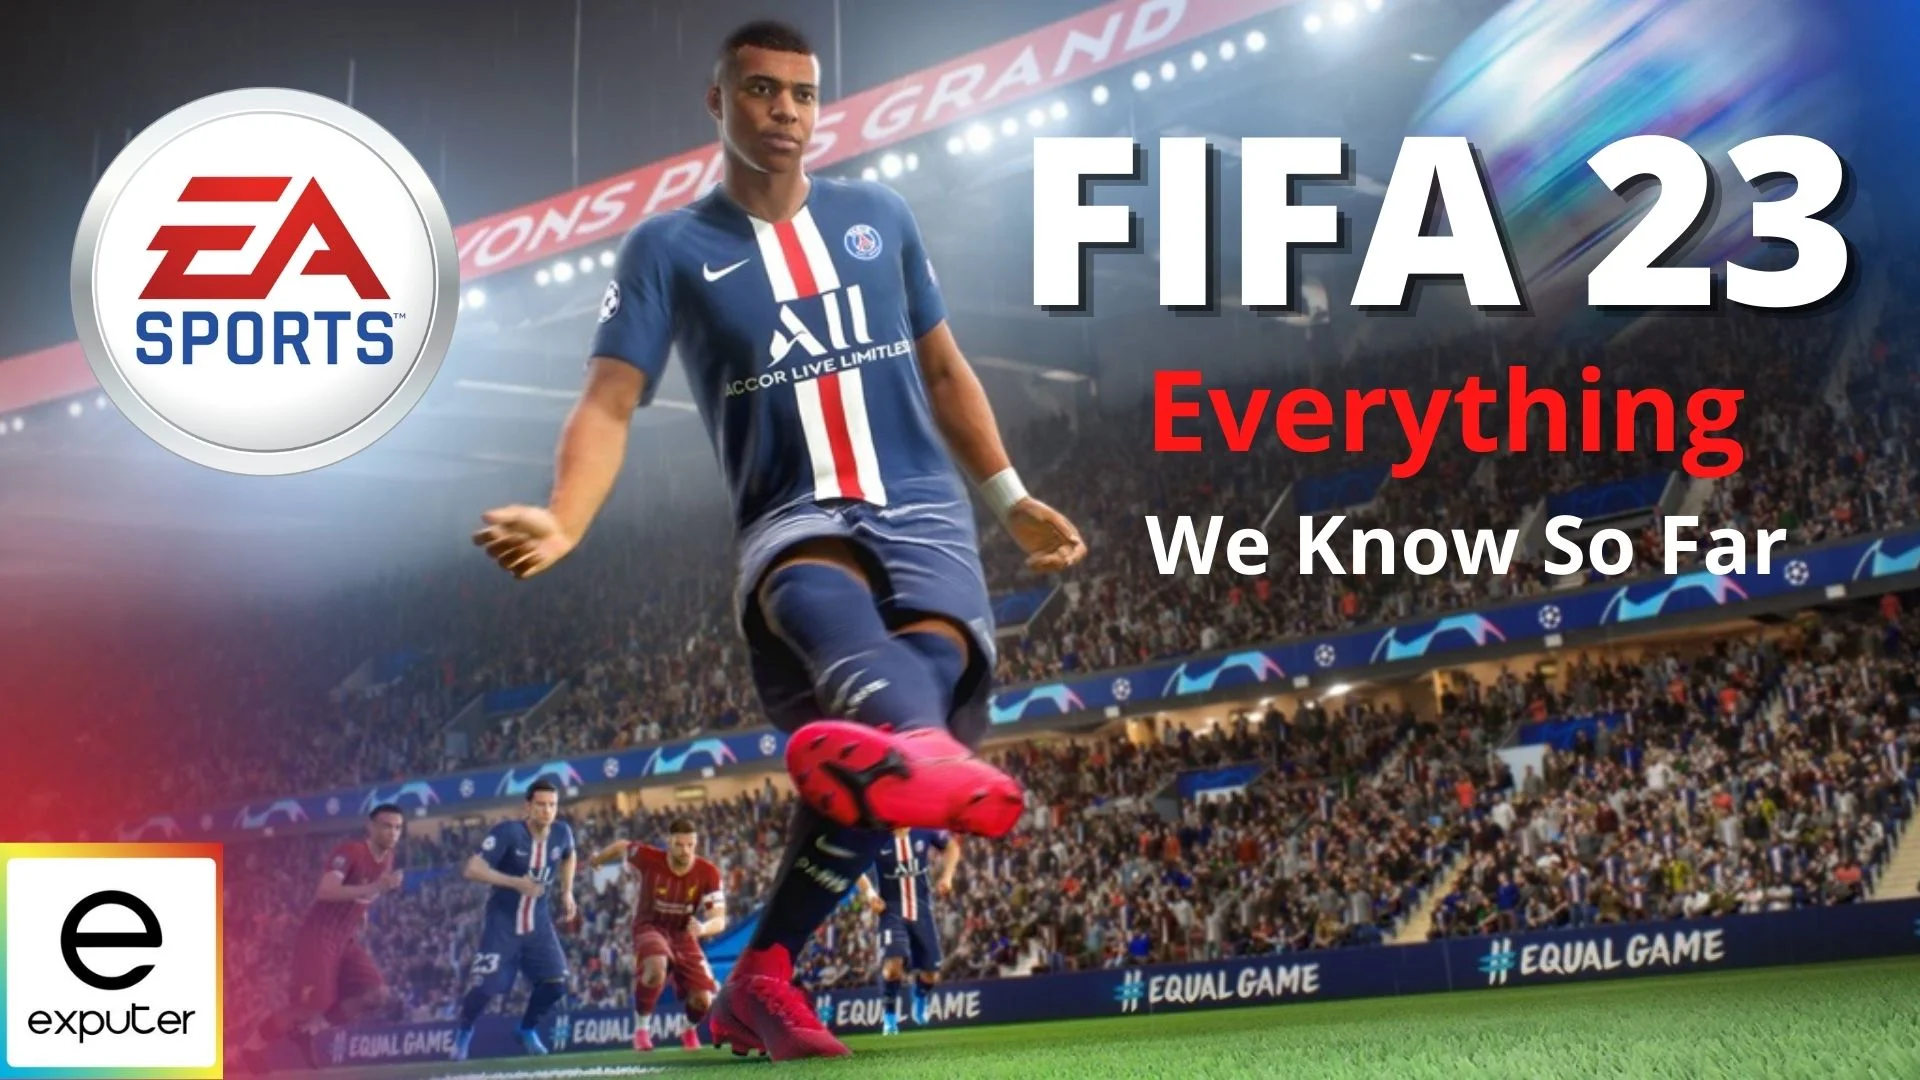 FIFA 23 FUT Heroes – FIFPlay